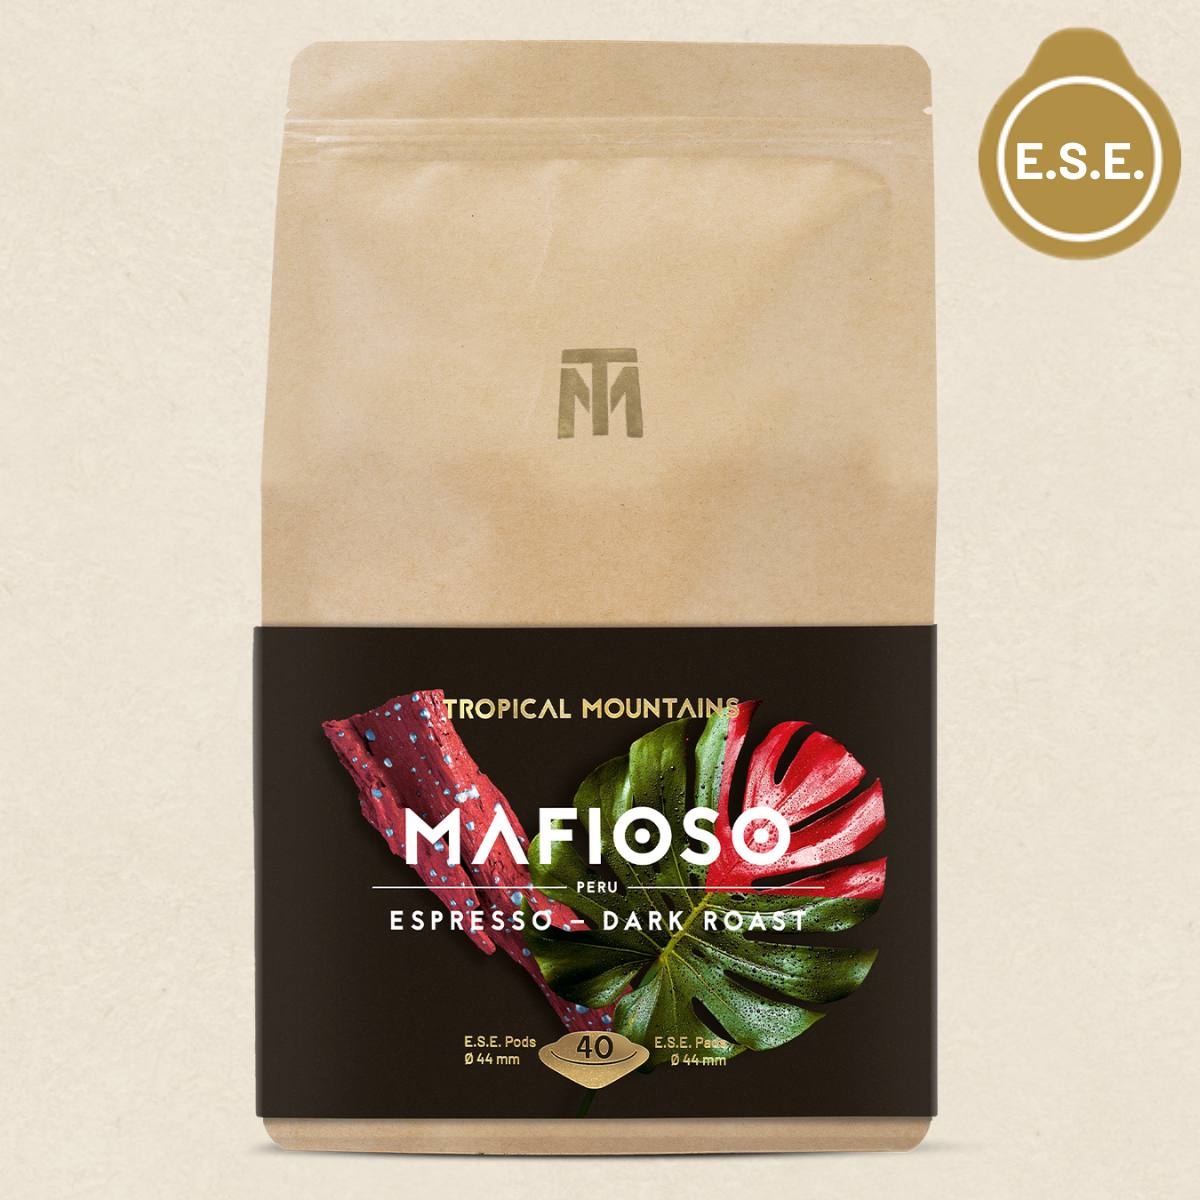 MAFIOSO Espresso Bio Fair Trade E.S.E. Pads